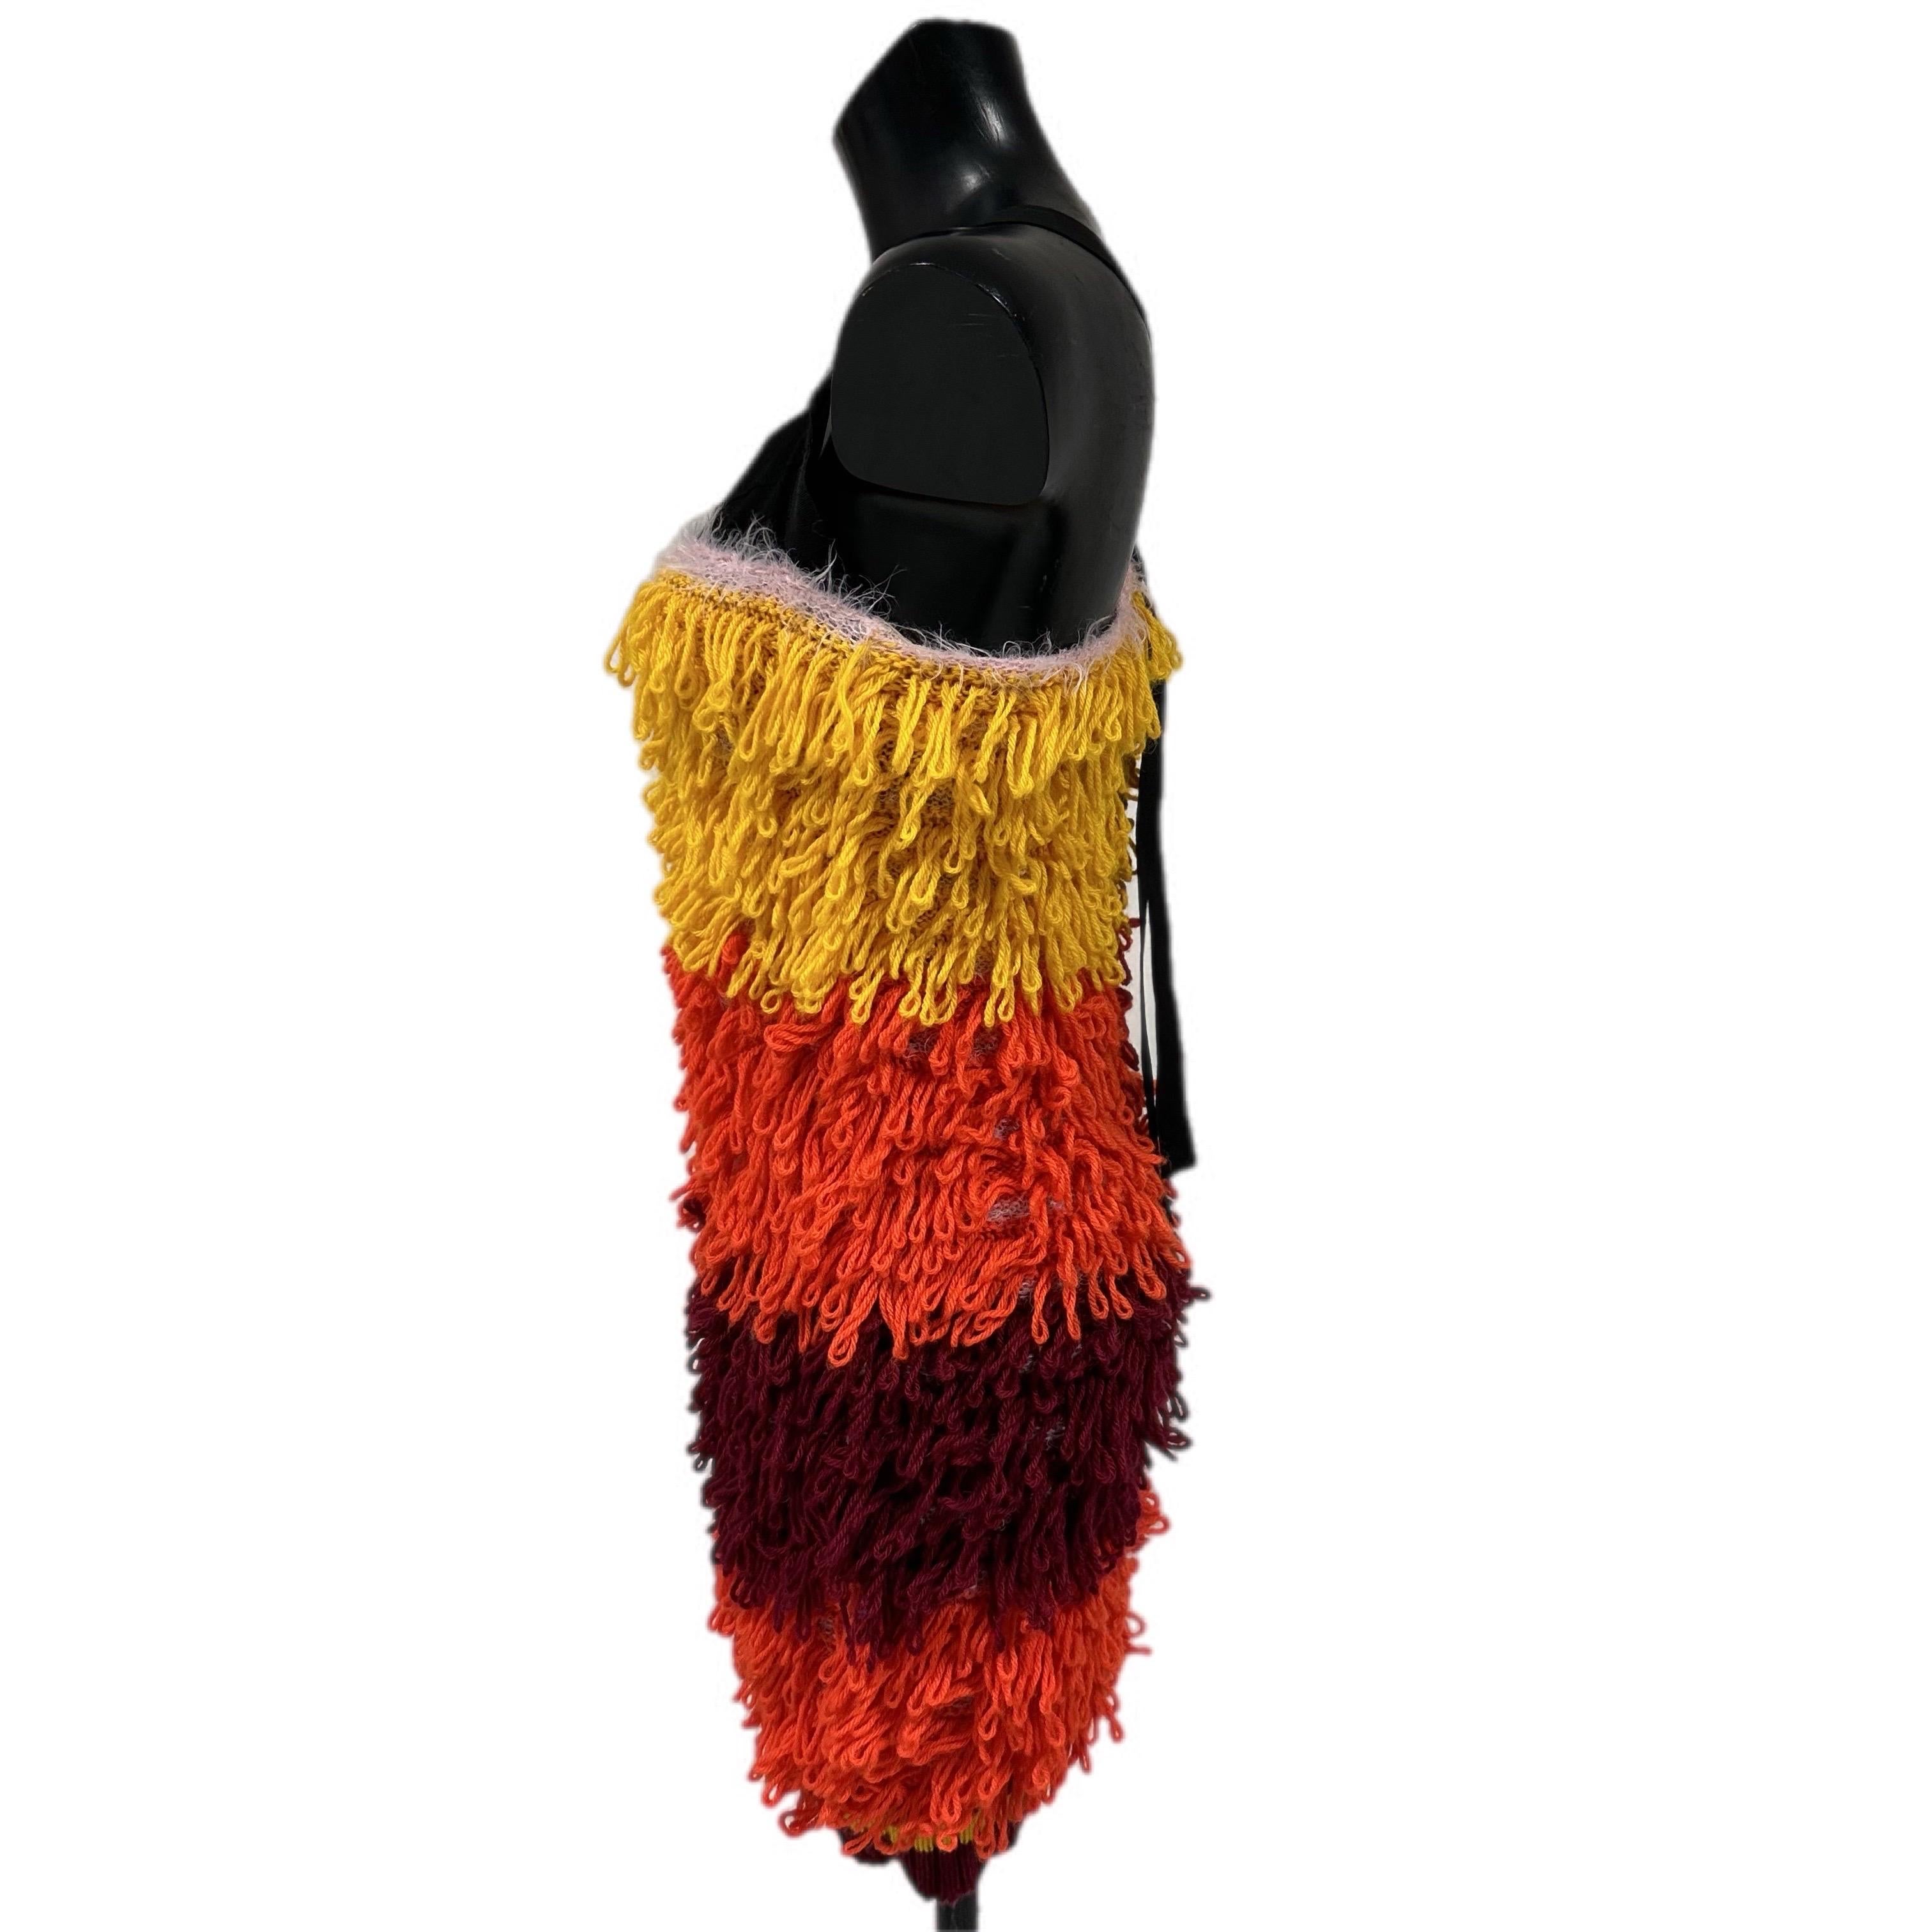 Abito multicolor Miahatami formato da fili di lana
la parte superiore è composta da una parte nera con spalline e su di essa riporta il brand
Un abito glamour in lana, caldo e confortevole
Taglia 40
misure:
Petto 40cm
Vita 44cm 
Lunghezza 94cm